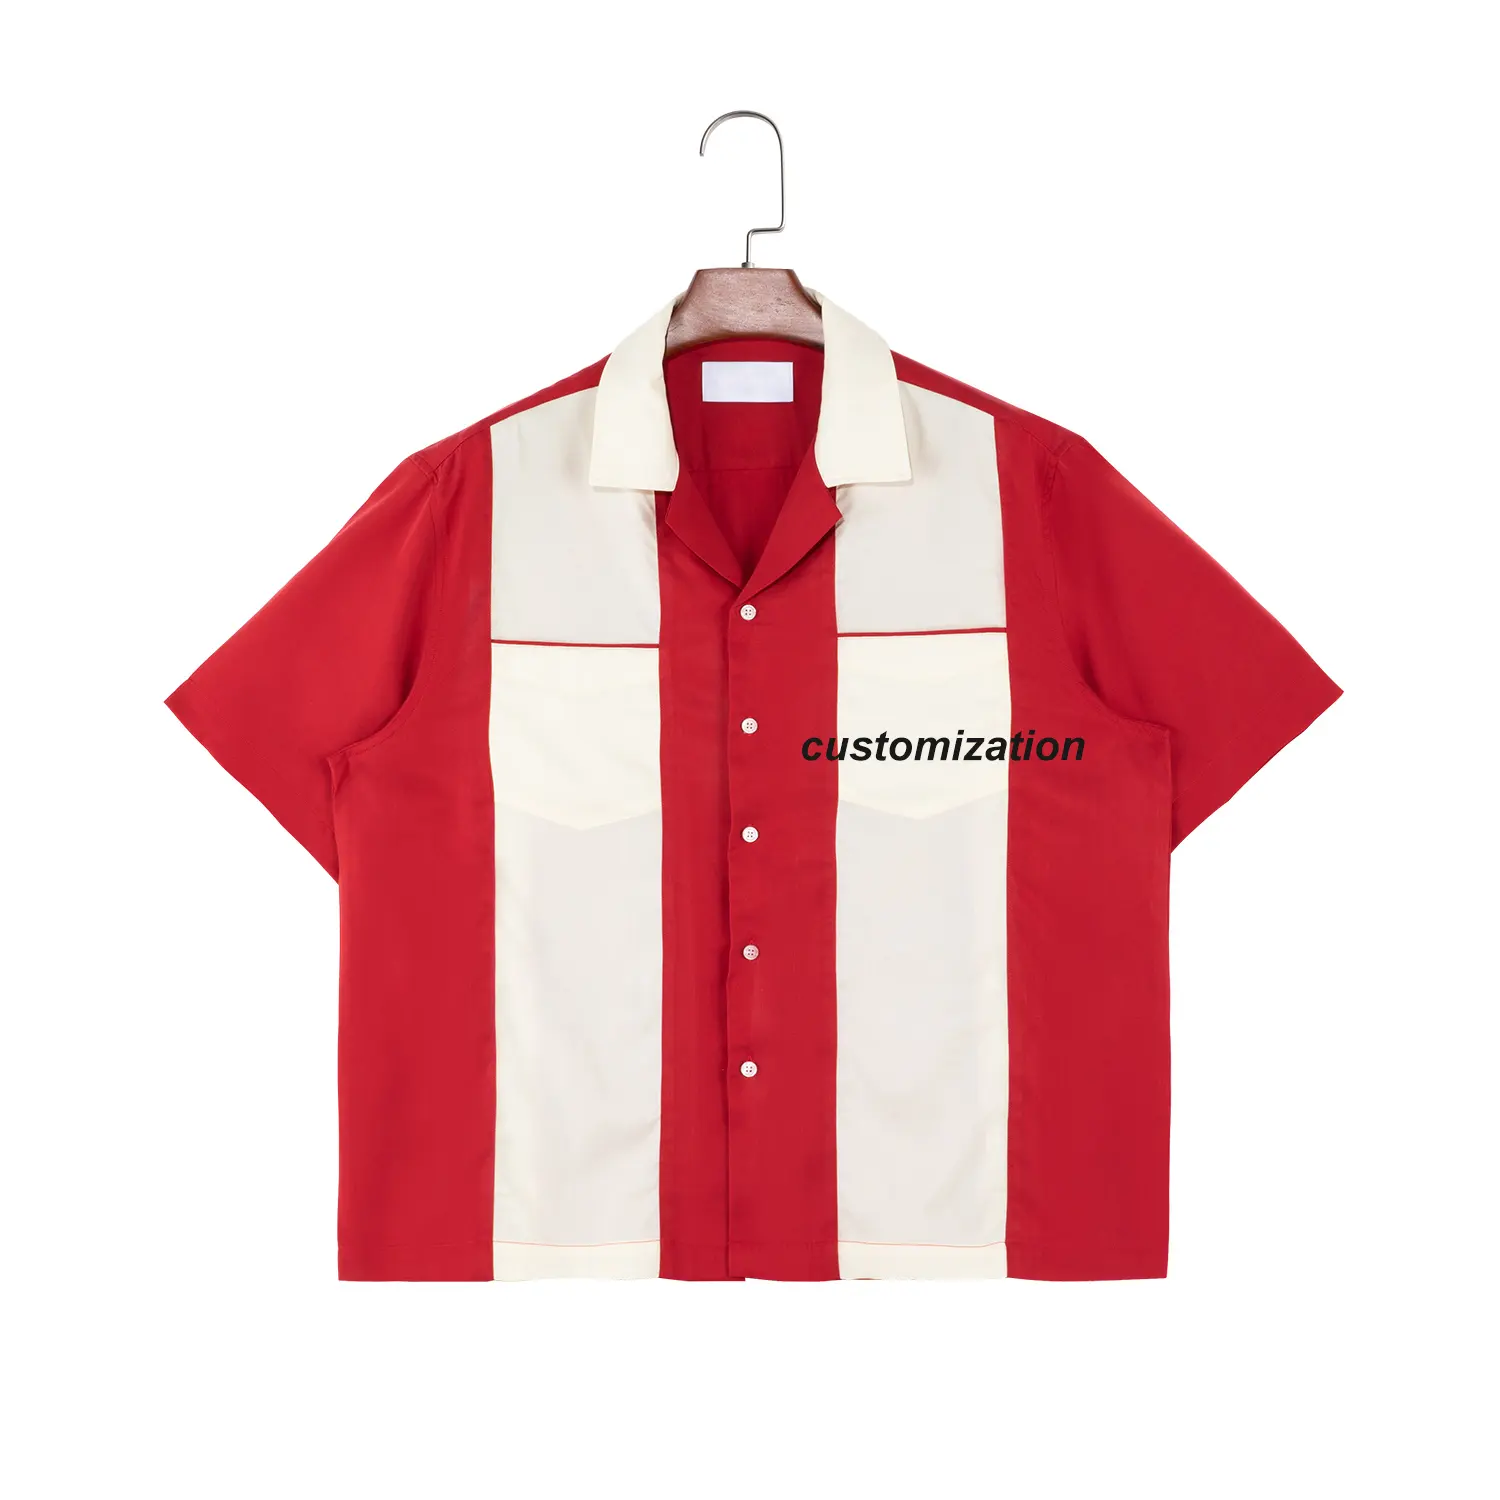 बॉटन अप क्यूबन कॉलर शर्ट लाल सफेद कलर मैच ब्लॉकिंग शॉर्ट स्लीव बॉलिंग शर्ट दो पॉकेट के साथ